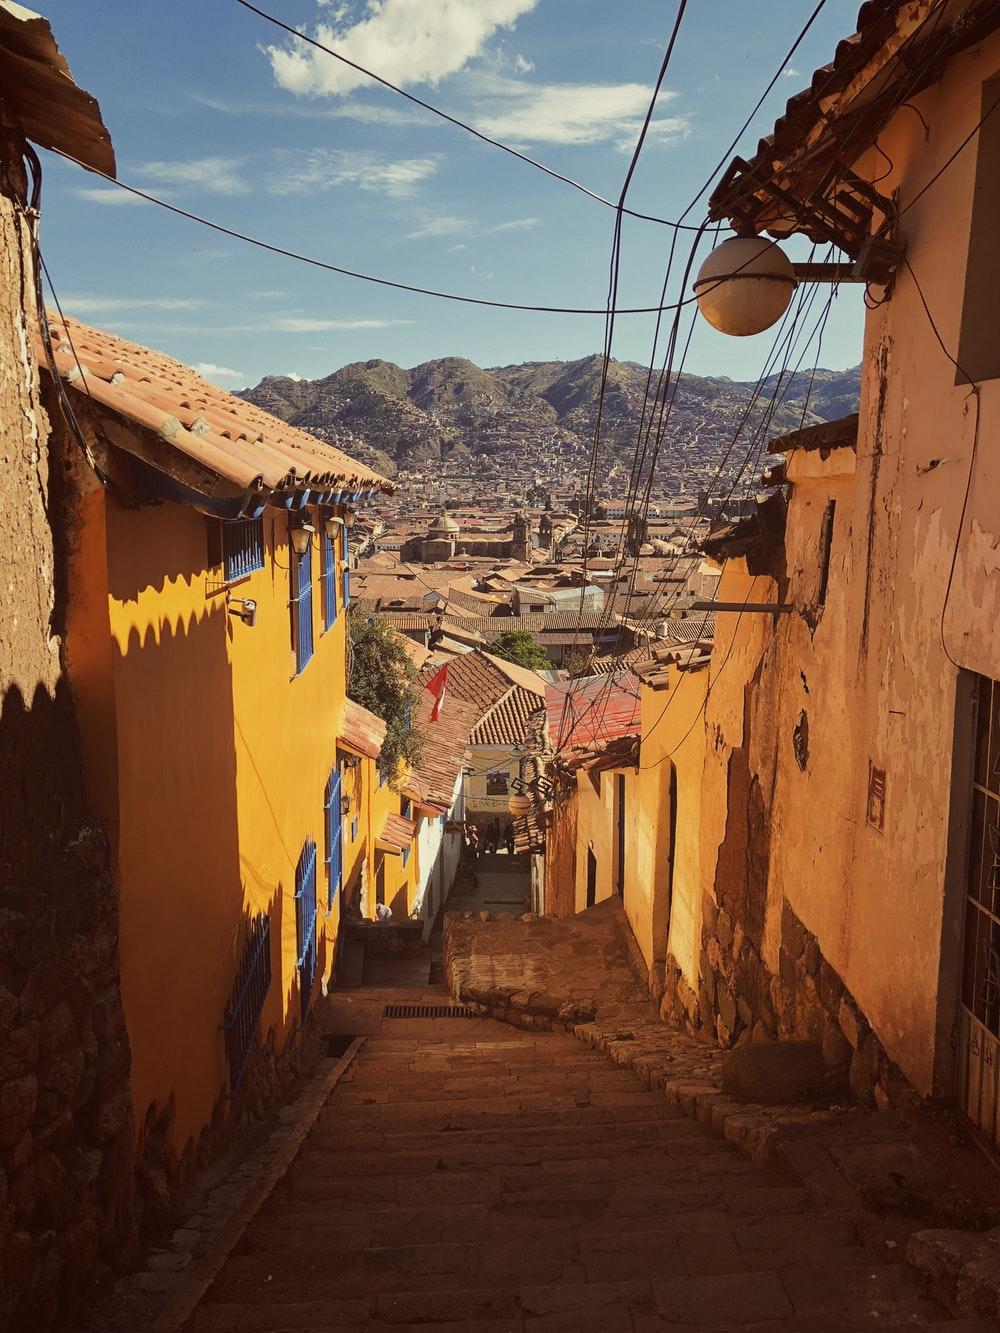 HQ Cusco, Peru Picture. Download Free Image